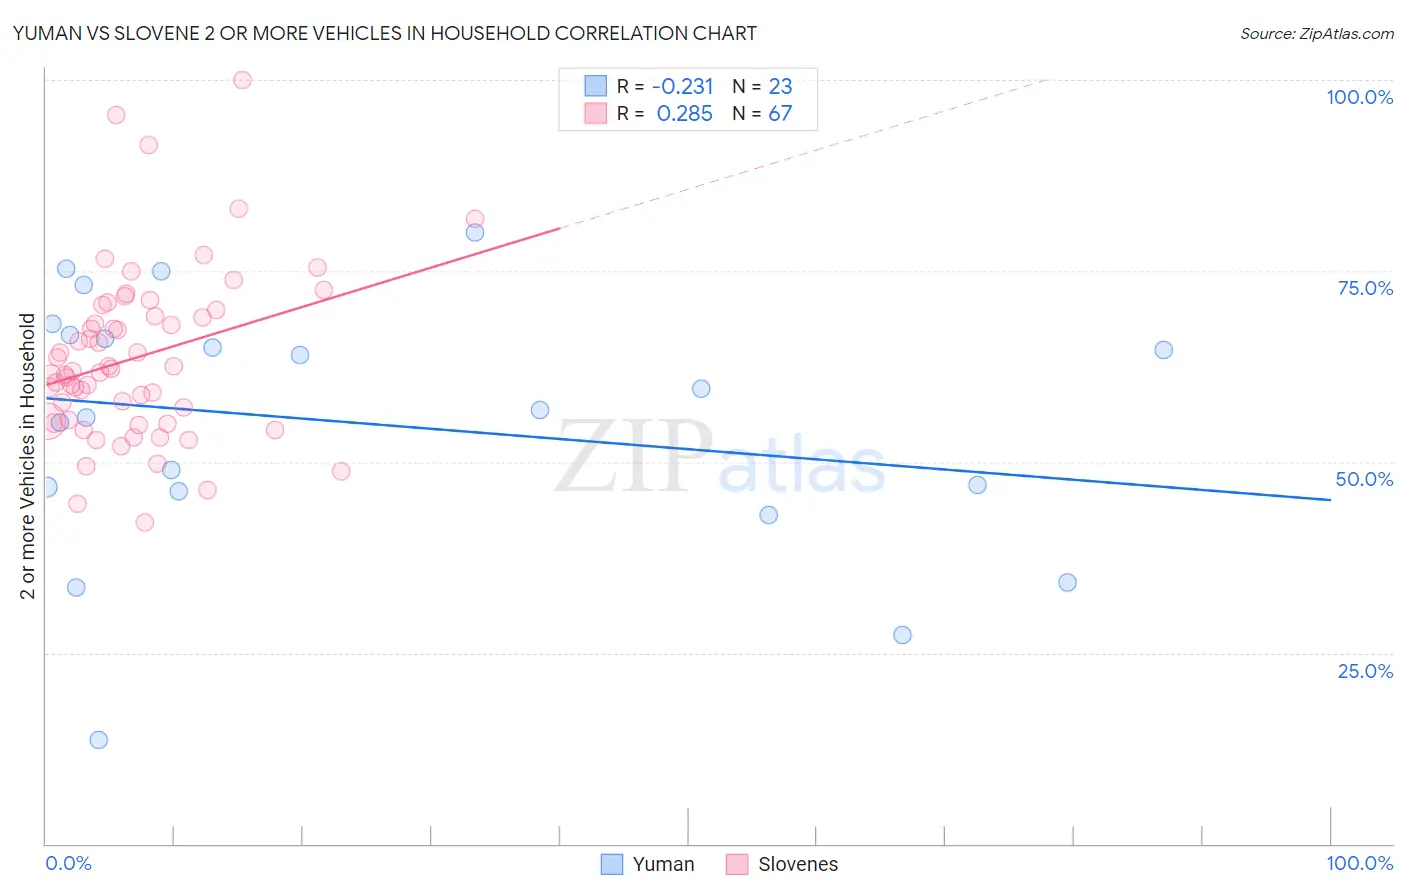 Yuman vs Slovene 2 or more Vehicles in Household